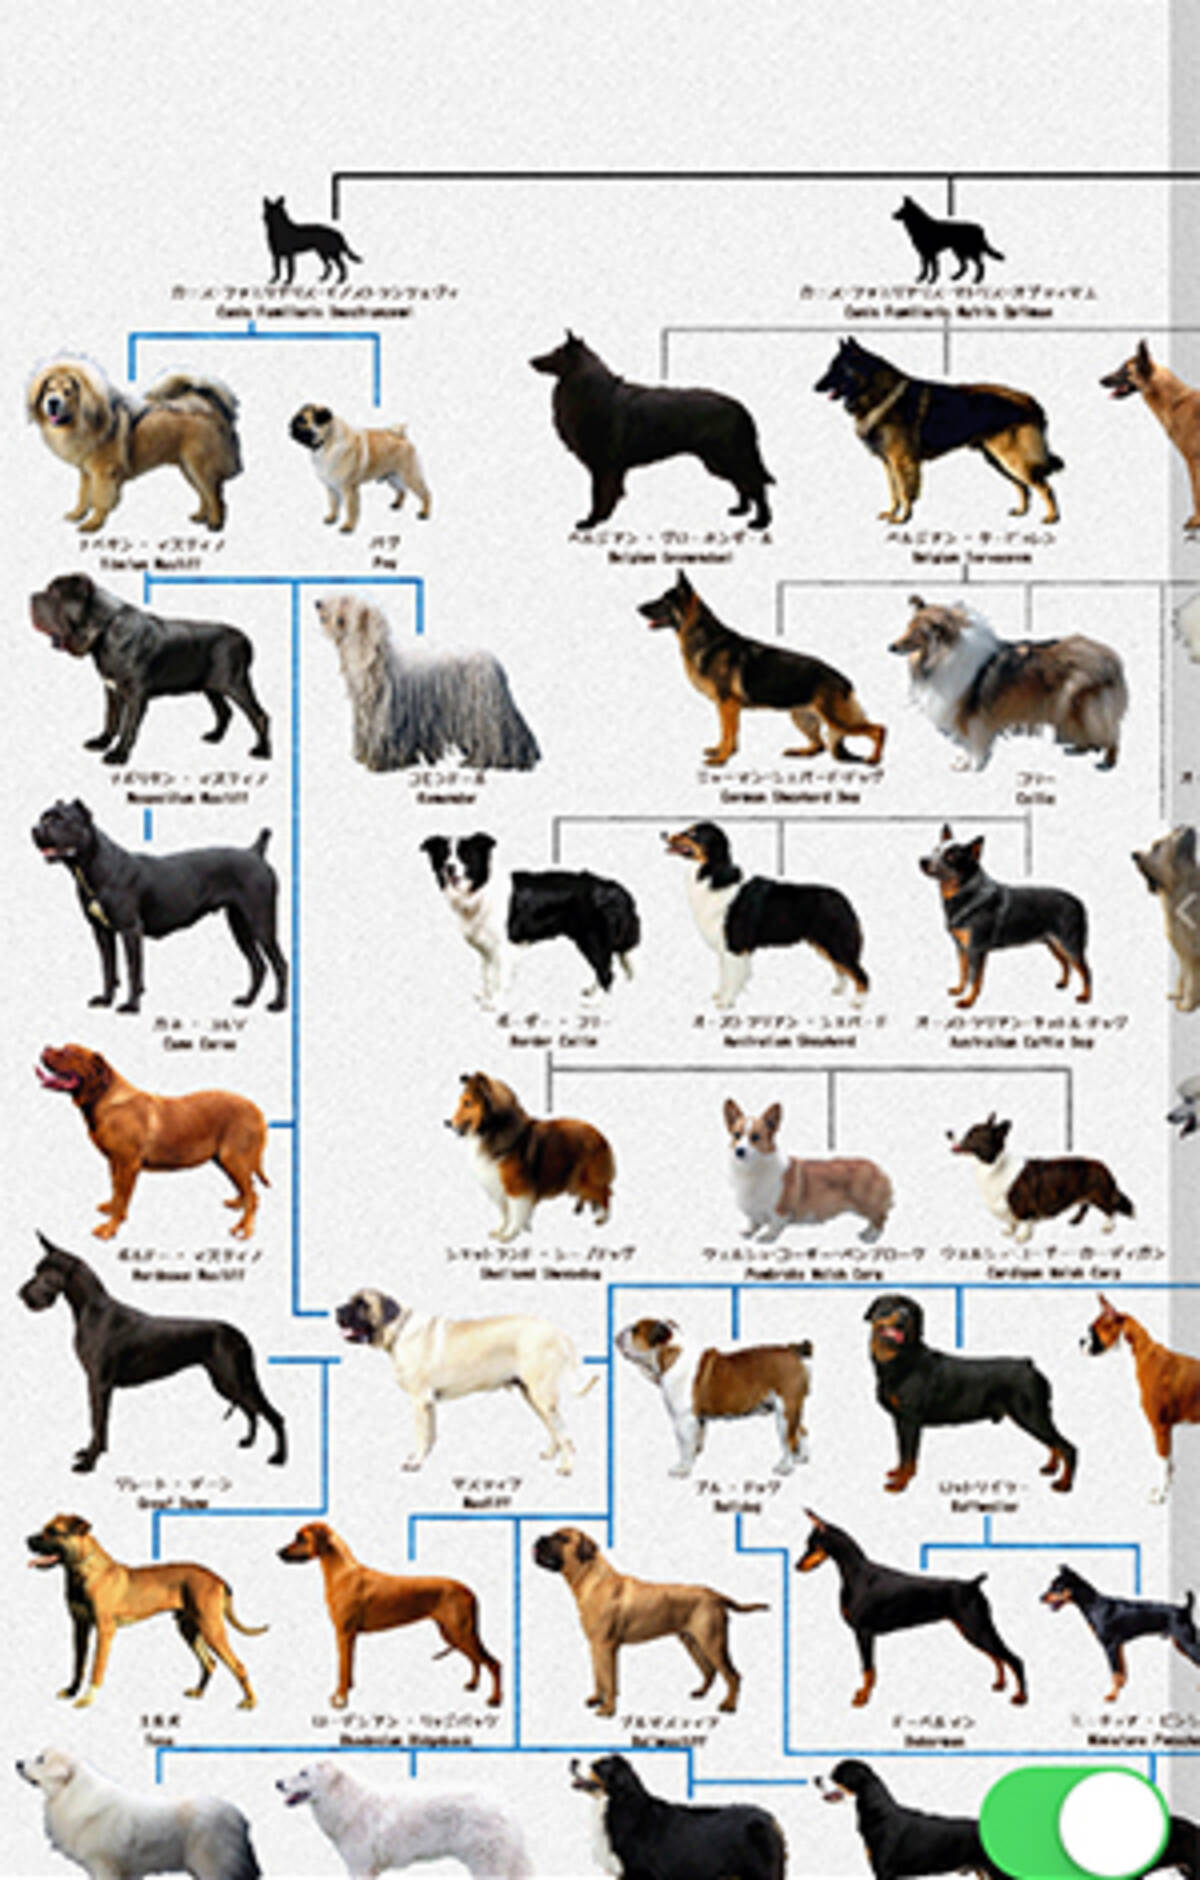 画面ぎっしりに犬 わかりやすい系統図でみる 犬図鑑 が楽しい 15年8月27日 エキサイトニュース